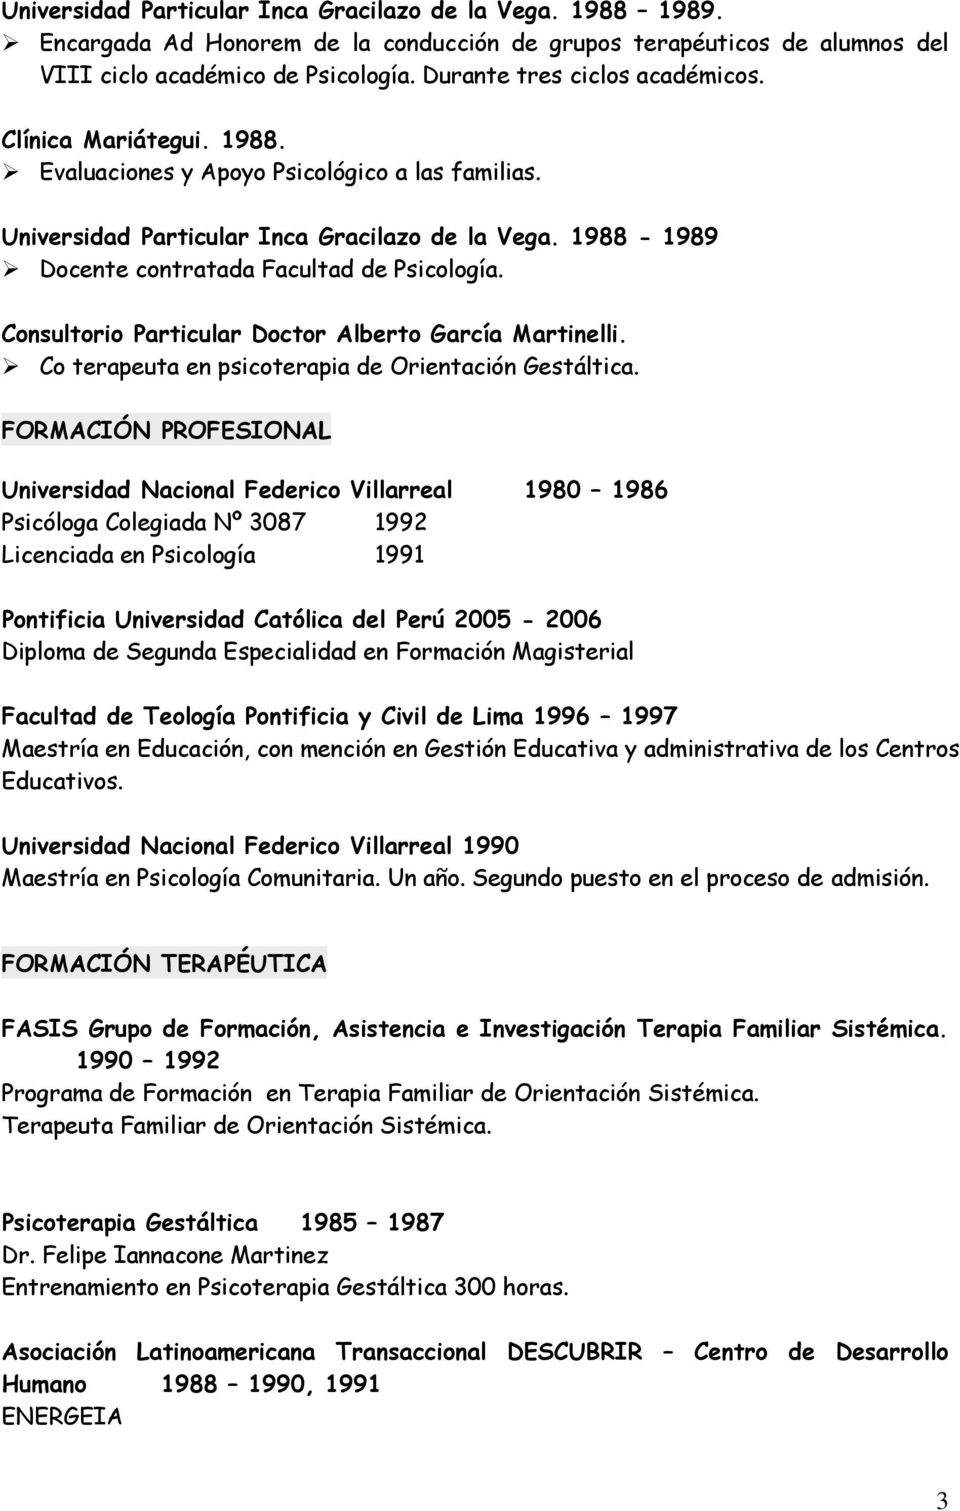 1988-1989 Docente contratada Facultad de Psicología. Consultorio Particular Doctor Alberto García Martinelli. Co terapeuta en psicoterapia de Orientación Gestáltica.